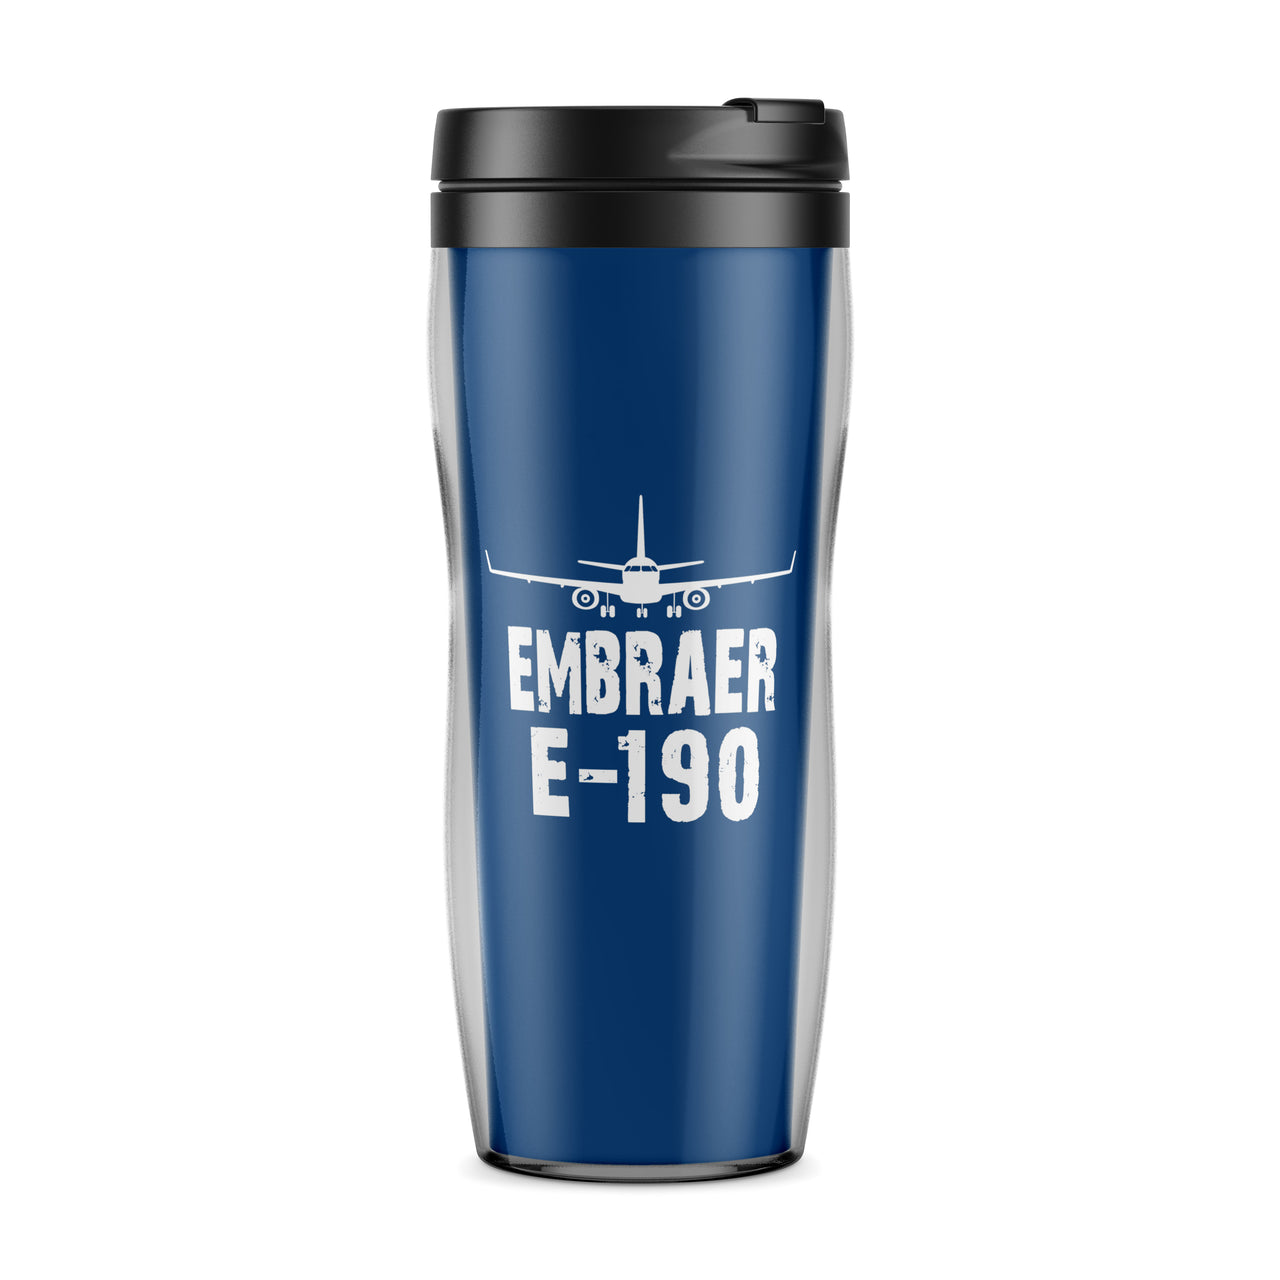 Embraer E-190 & Plane Designed Travel Mugs